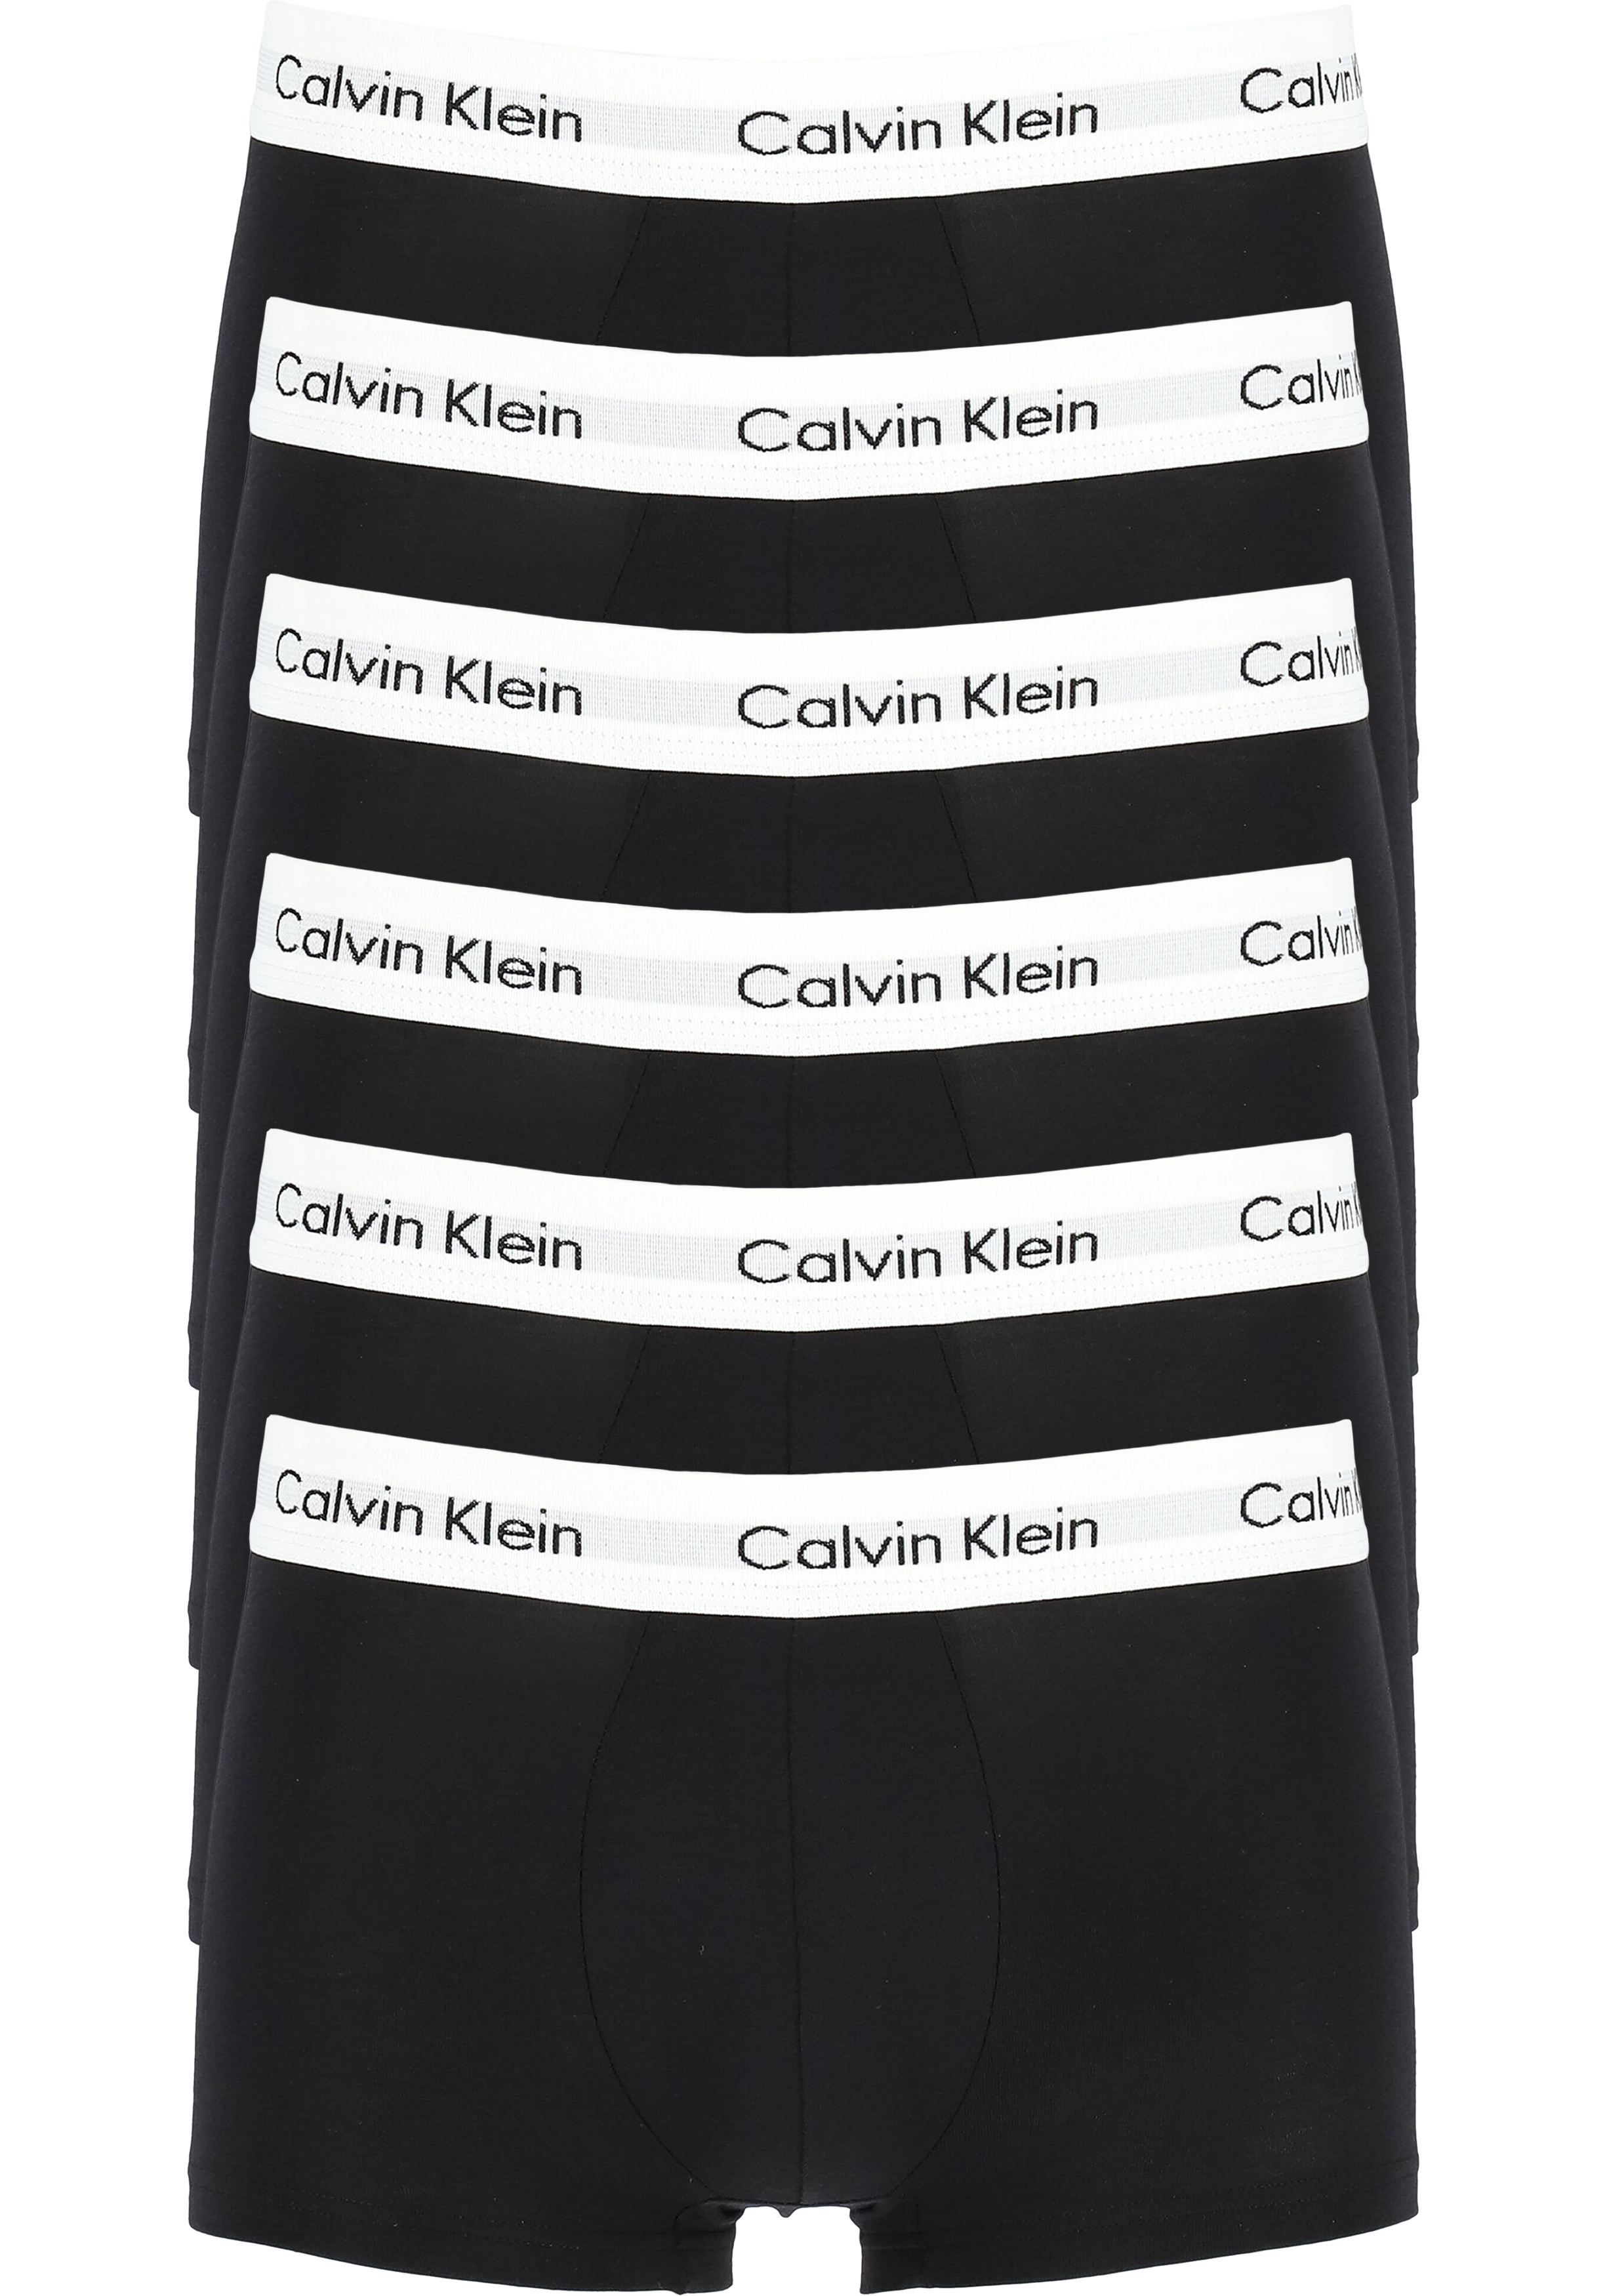 van mening zijn een miljoen oneerlijk Actie 6-pack: Calvin Klein low rise trunks, lage heren boxers kort, zwart -  Zomer SALE tot 50% korting